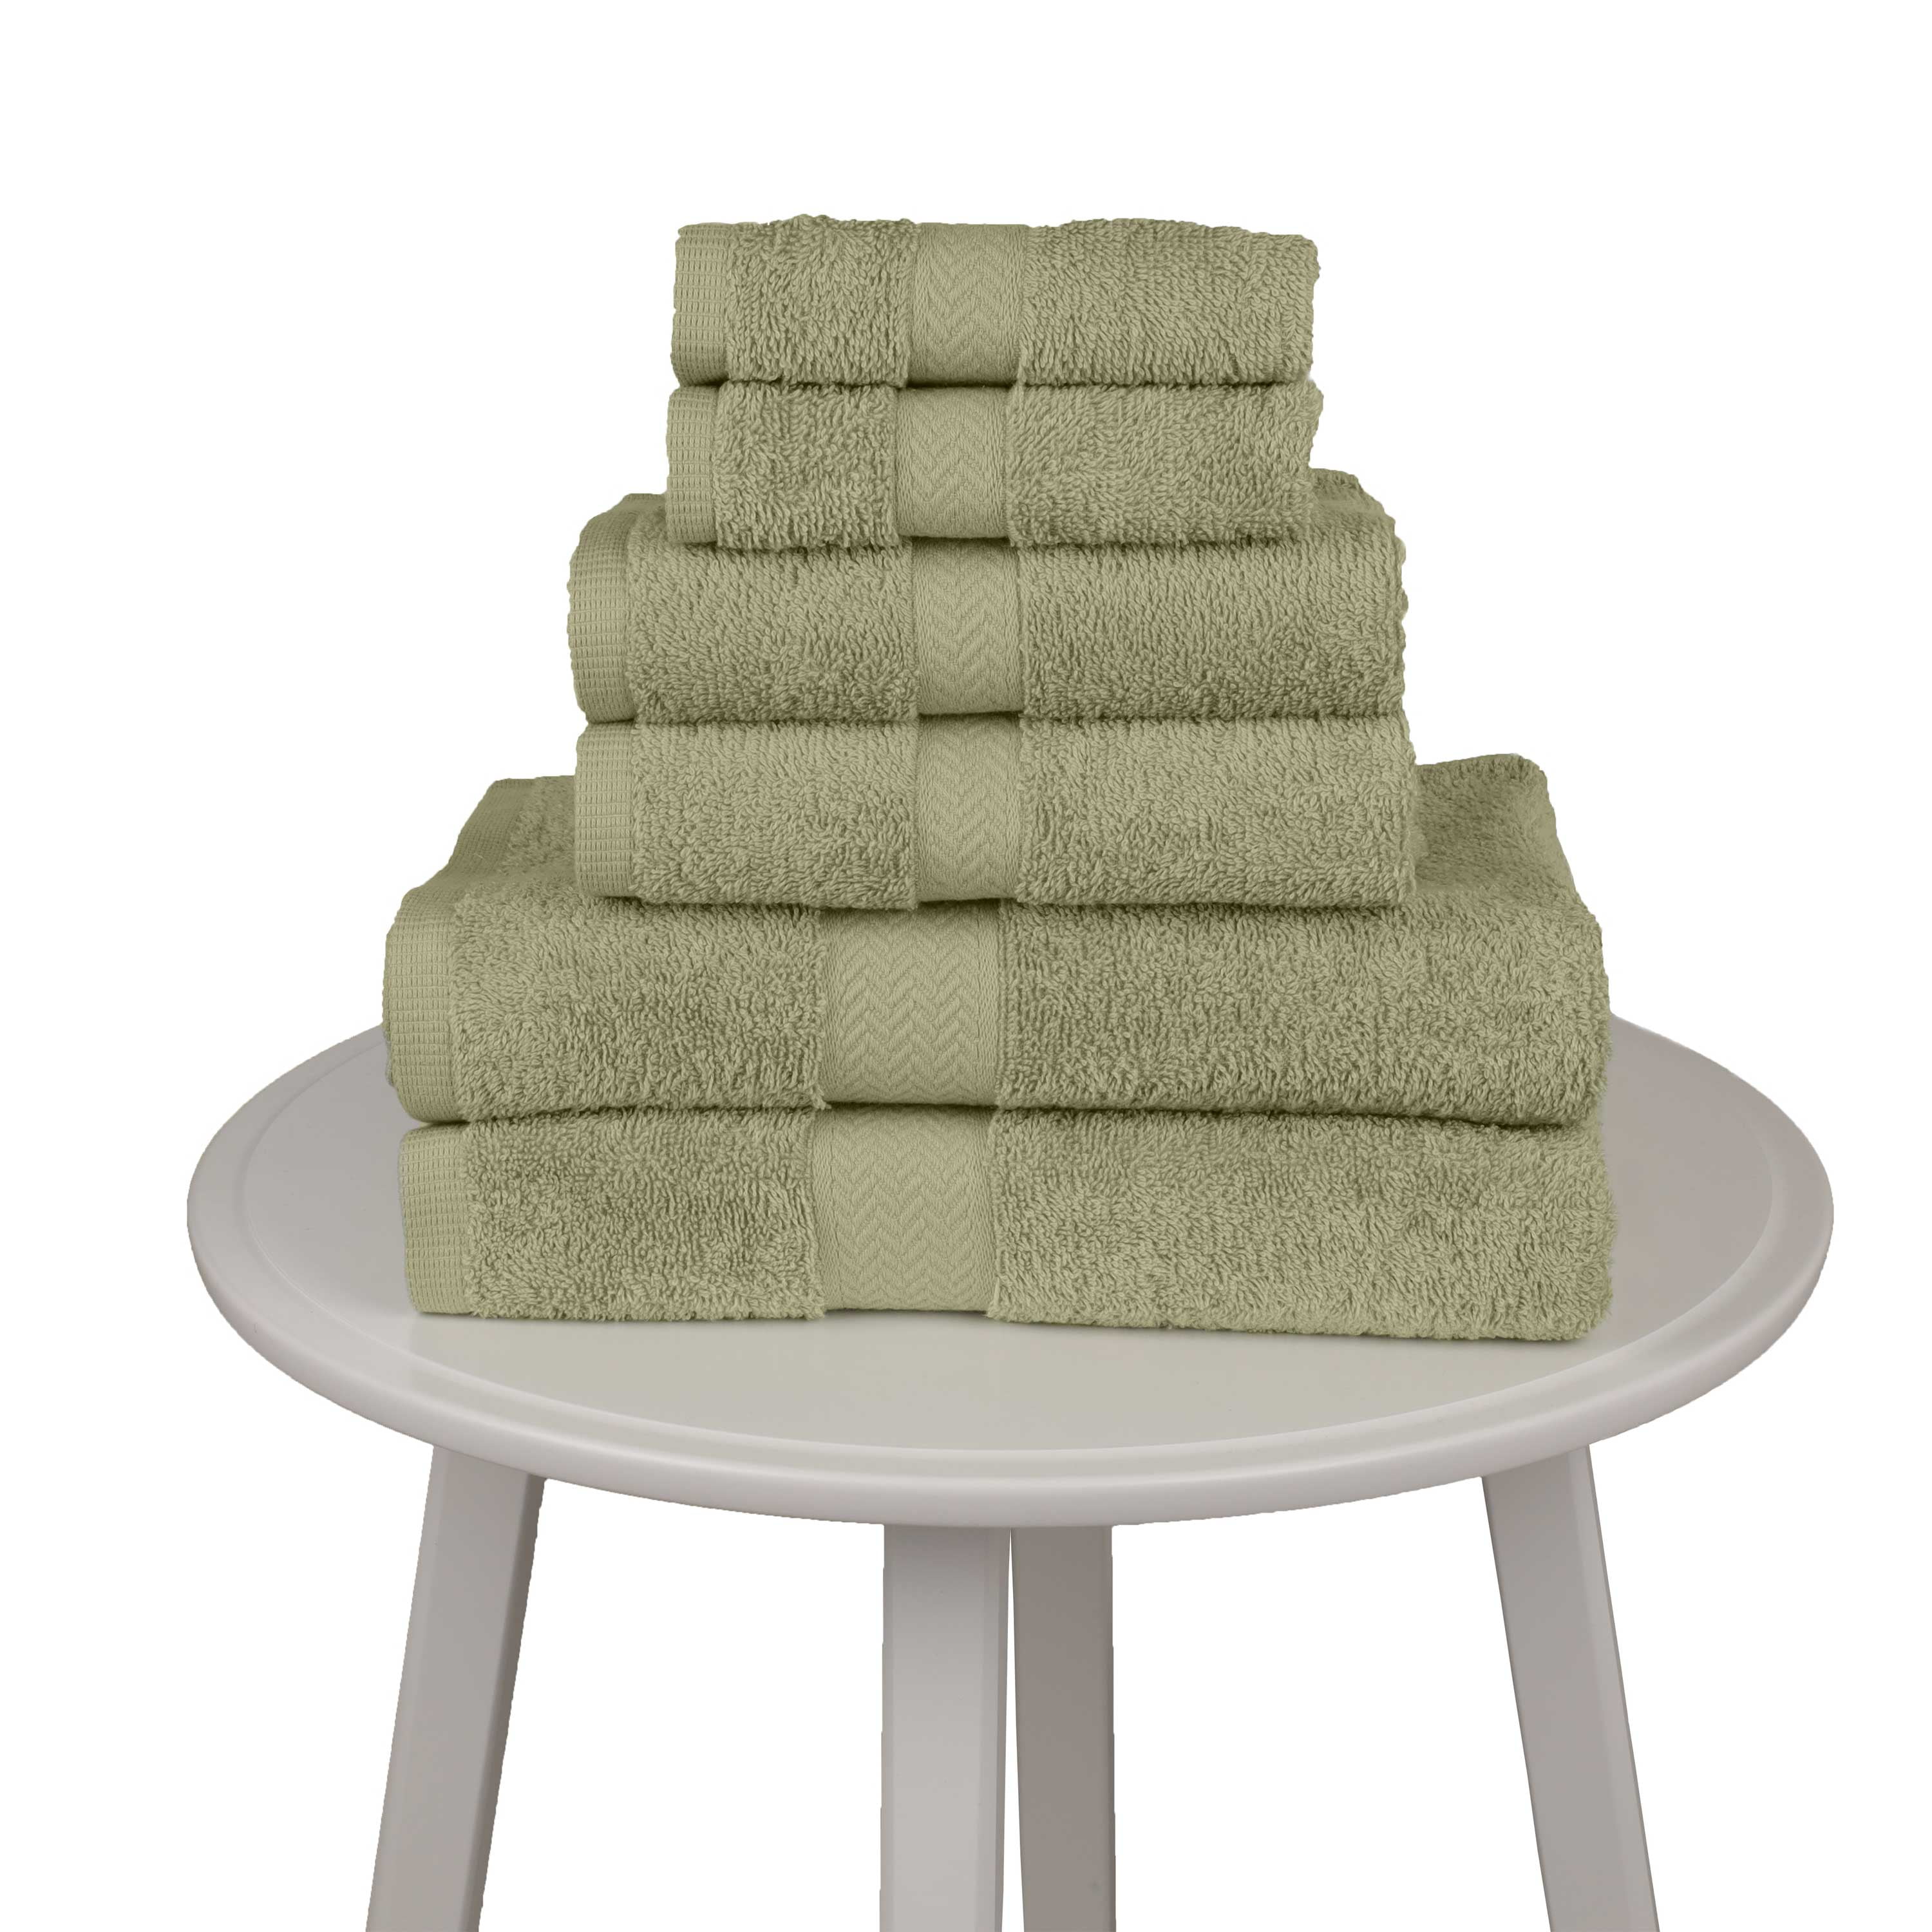 Martex T4100-Ecru Bath Towel,Ecru,24x50,PK12, Ecru